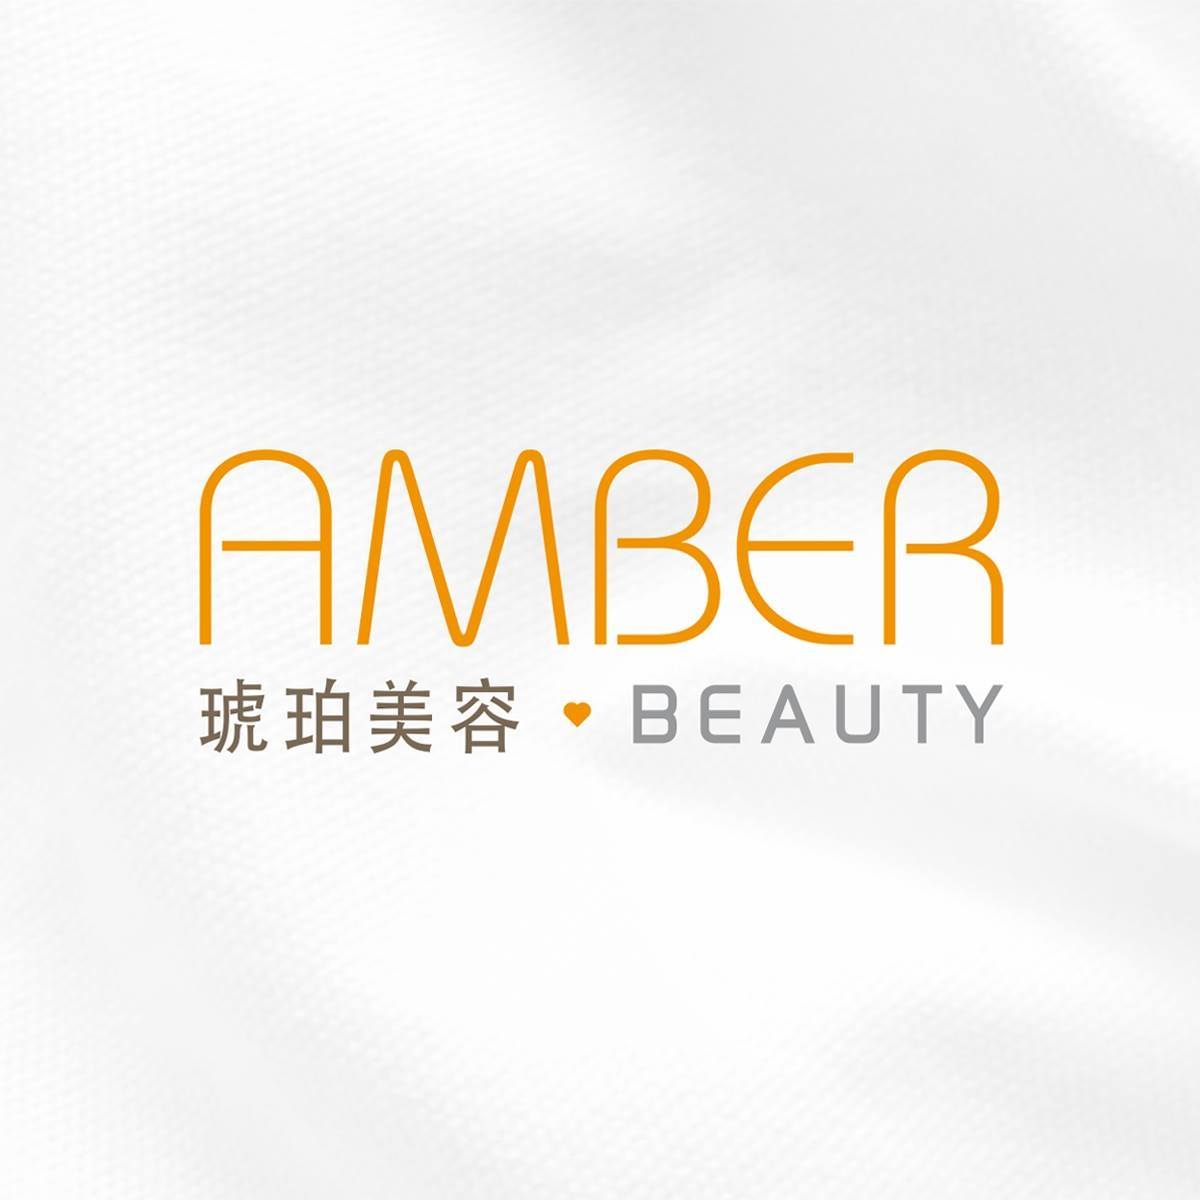 美容院 Beauty Salon 集团琥珀美容 Amber Beauty (石門店) @ 香港美容网 HK Beauty Salon